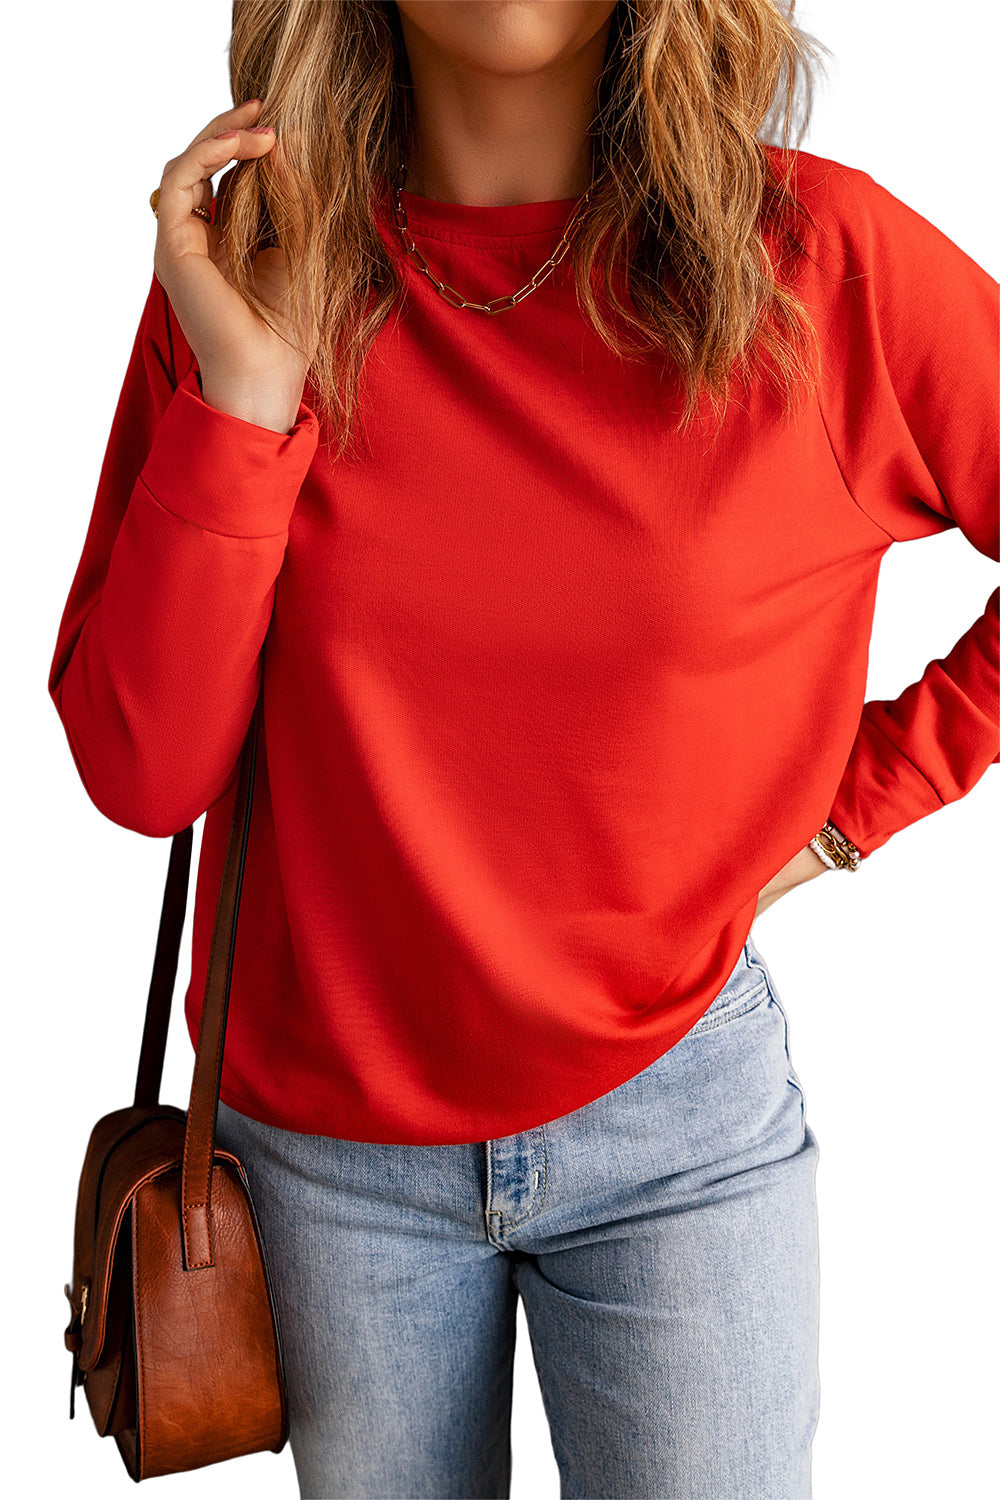 Fiery Red Solid Color Crewneck Pullover Sweatshirt